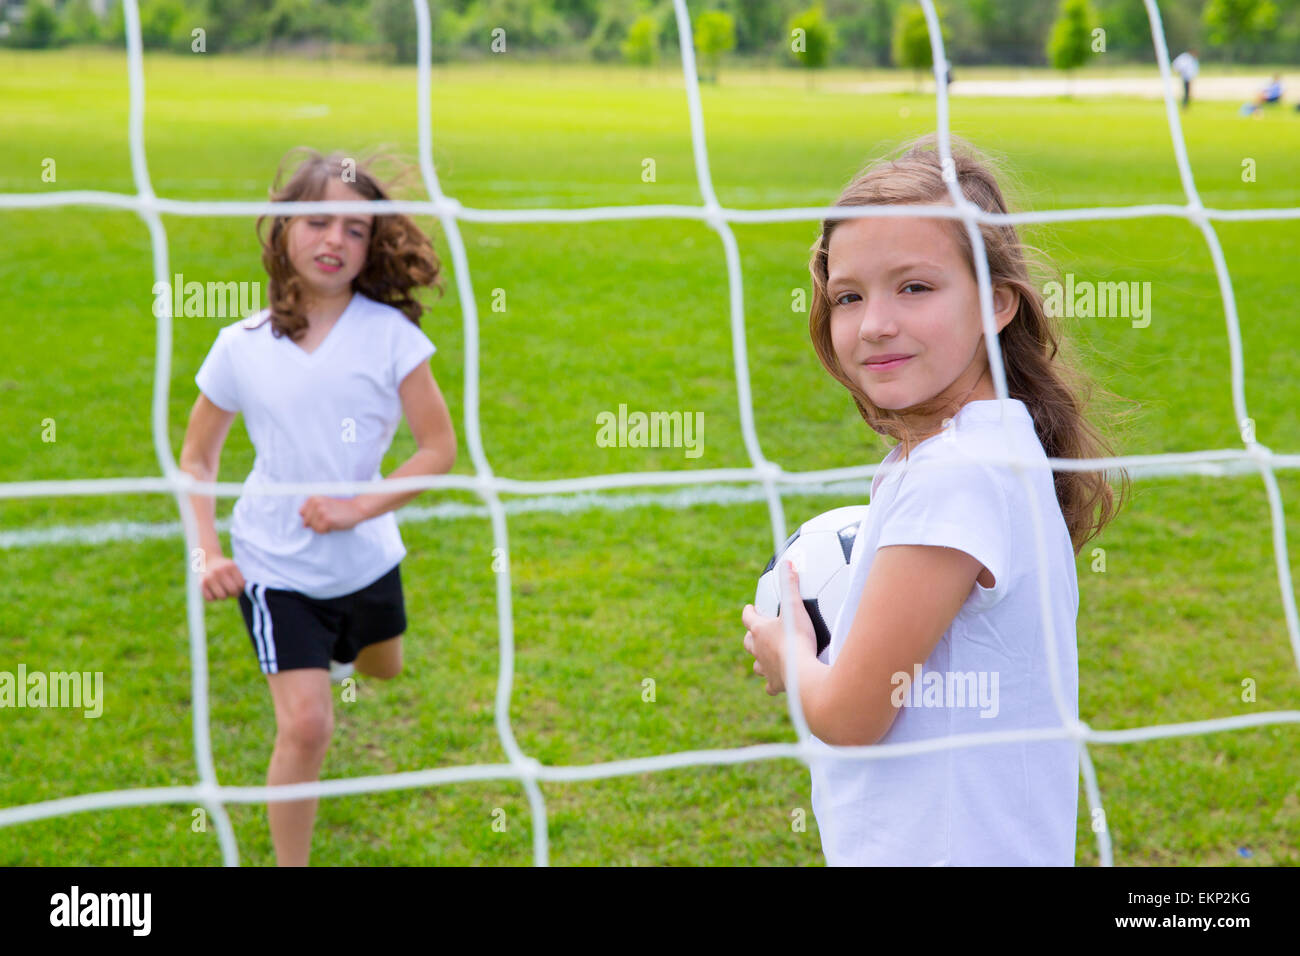 В футбол играли женщины. Детский футбол девочки. Маленькая девочка с футбольным мячом. Мальчики и девочки футбол вместе. Девочки играют в футбол на траве.